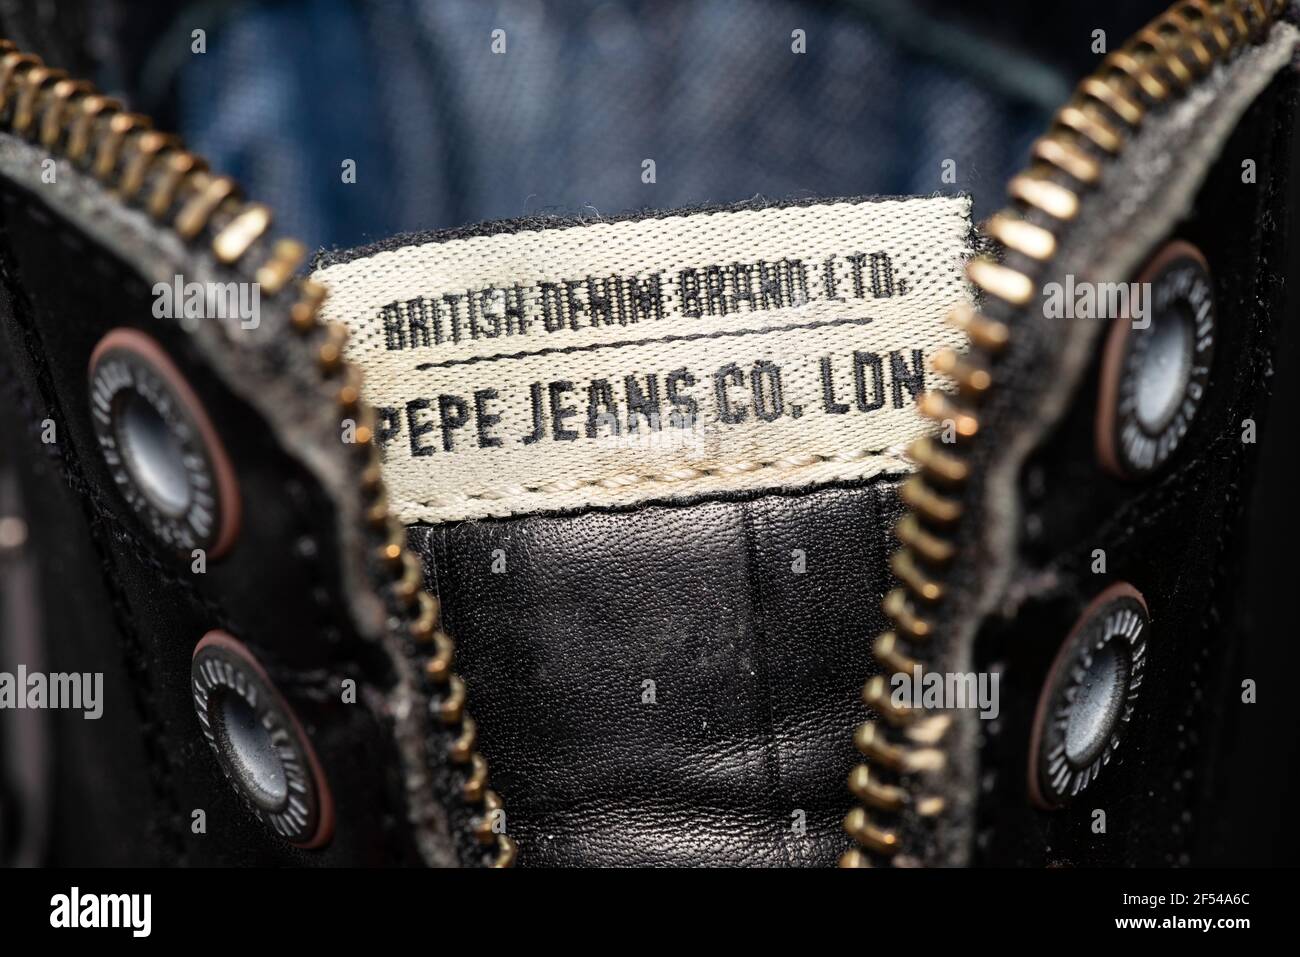 British Denim Brand Ltd. Pepe Jeans Co. London etichetta scarpe, zip e occhielli in metallo su uomo nero stivali in pelle dettaglio primo piano Foto Stock